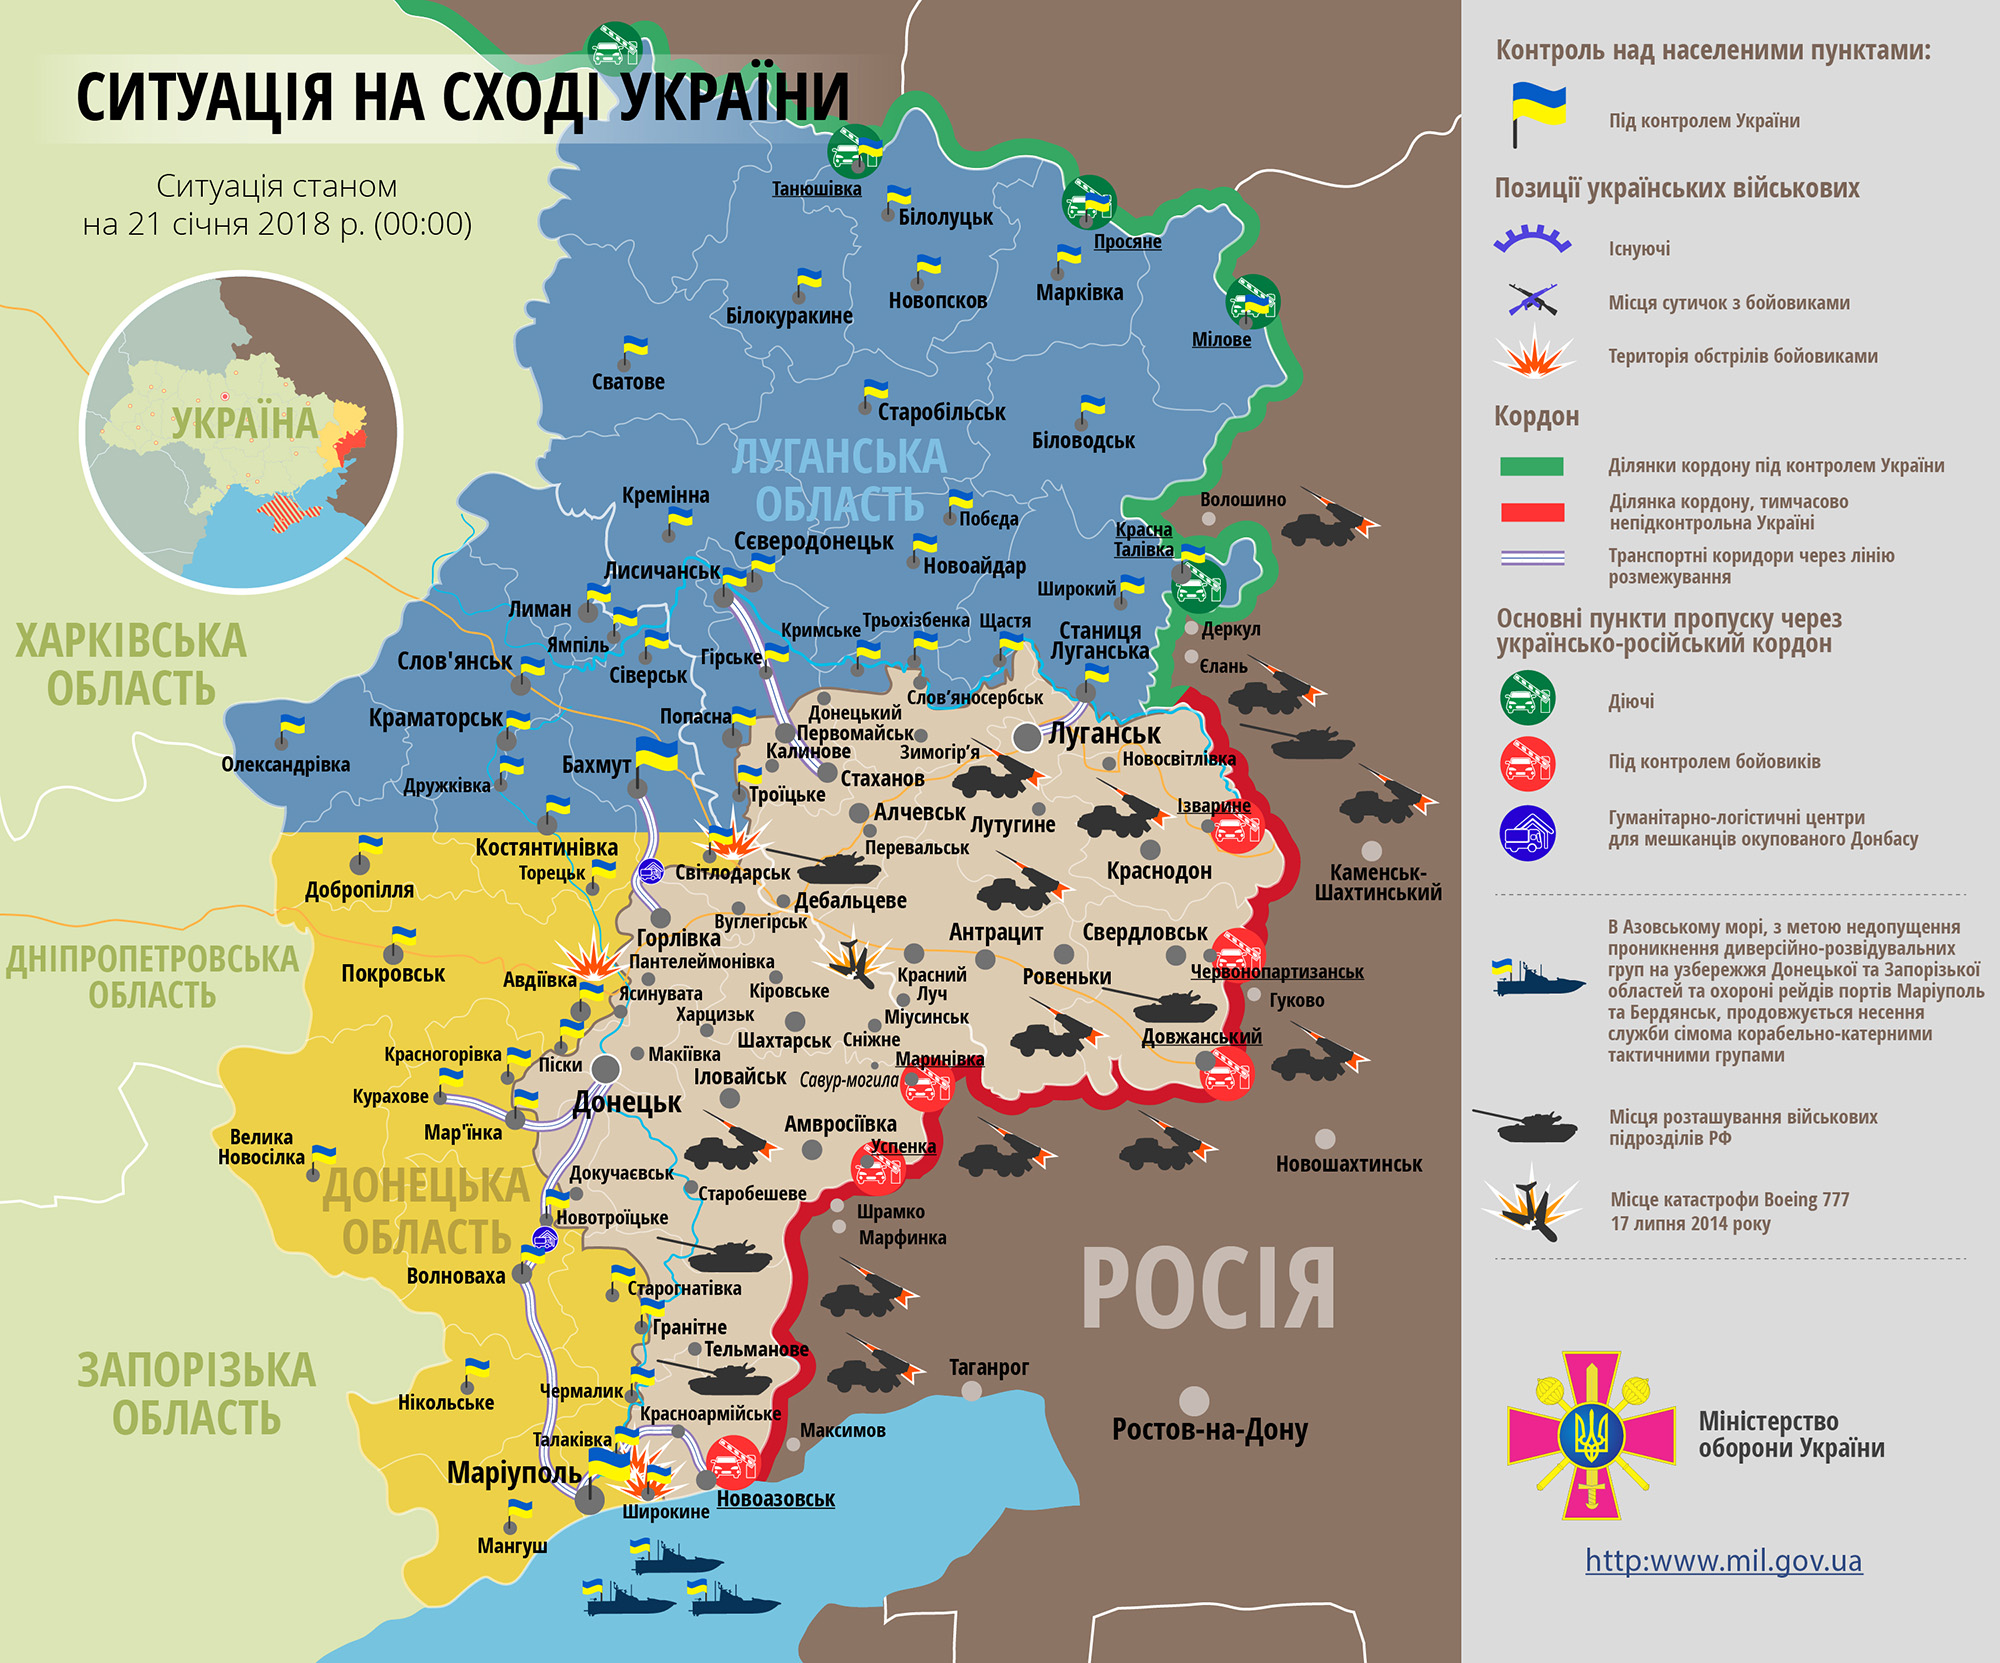 Ситуация на востоке страны (карта АТО) по состоянию на 12:00 21 января 2018 по данным СНБО Украины